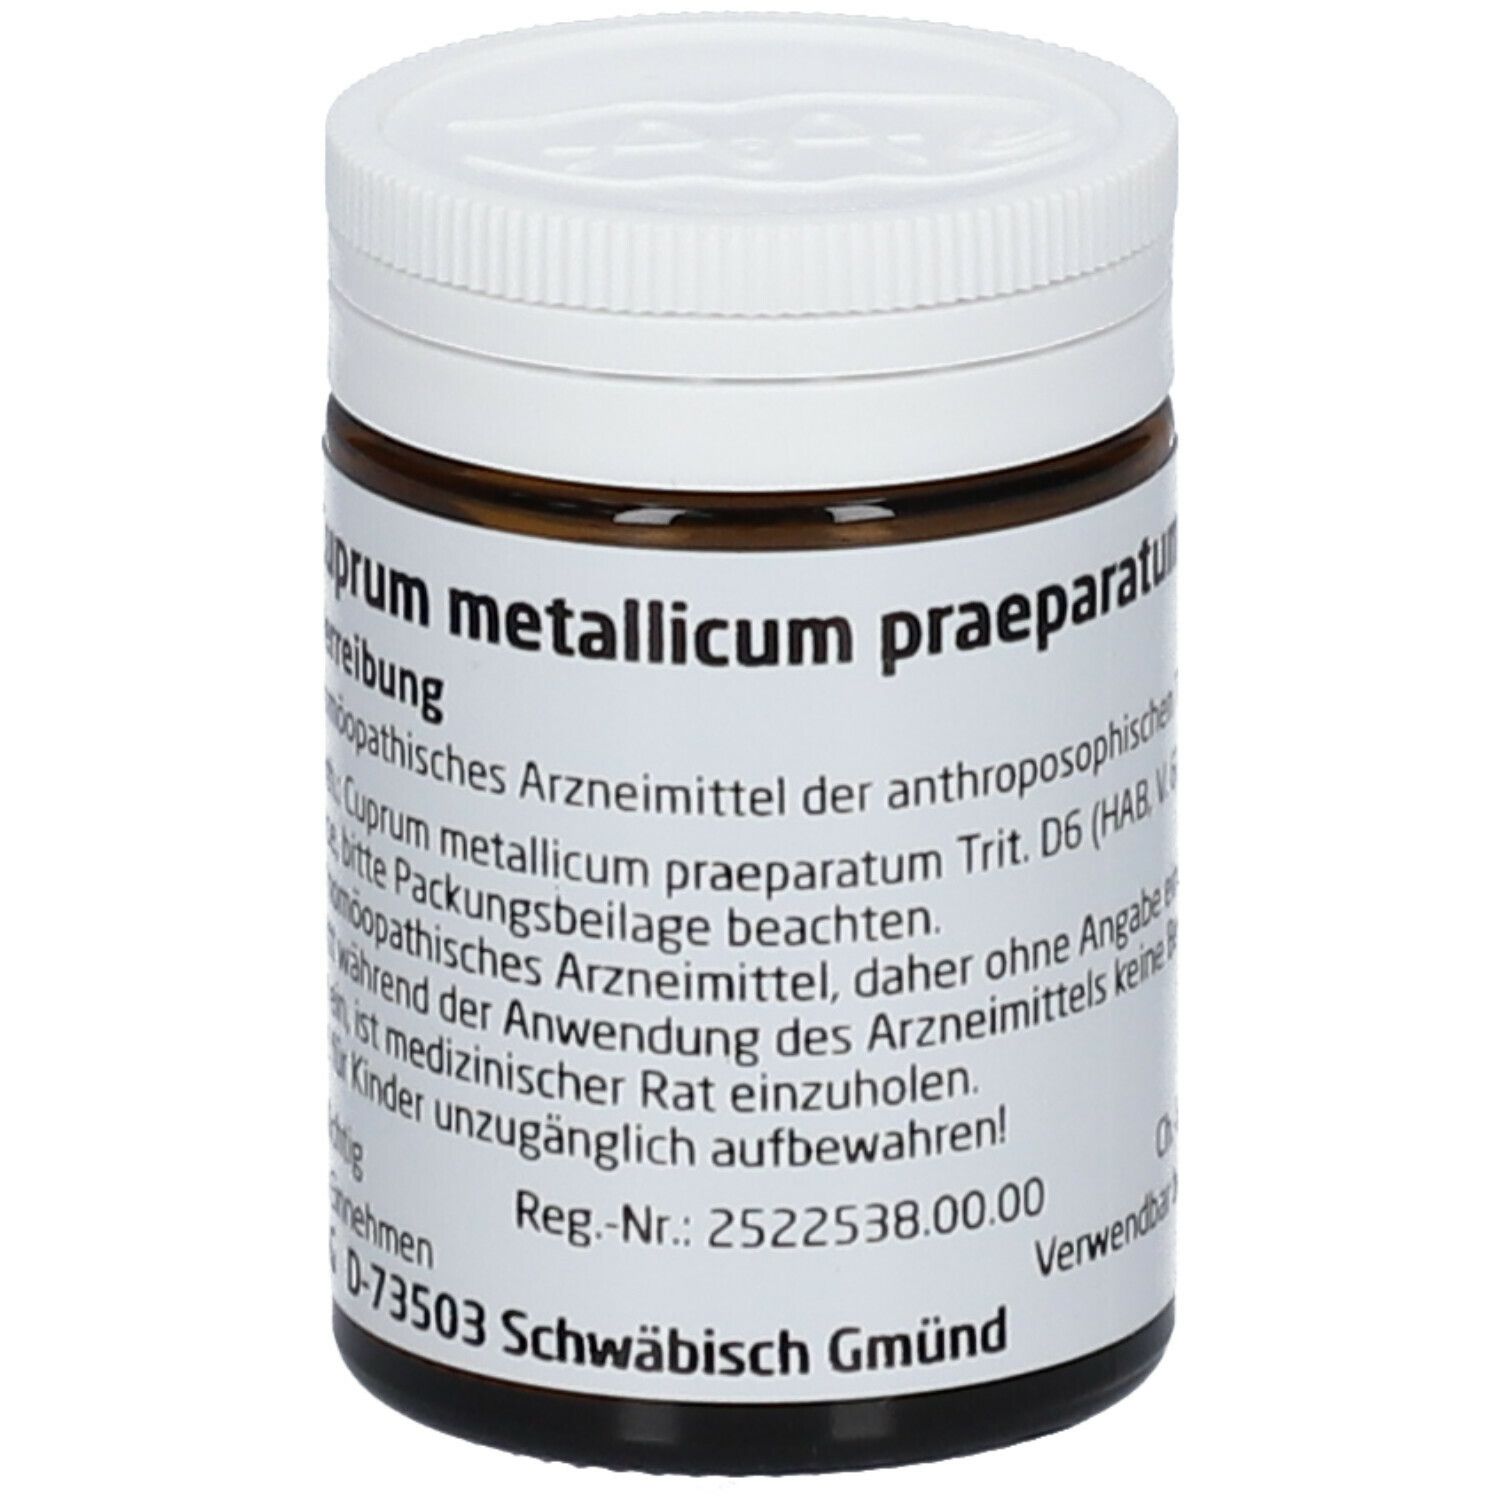 Cuprum Metallicum Praep. D6 Trituration